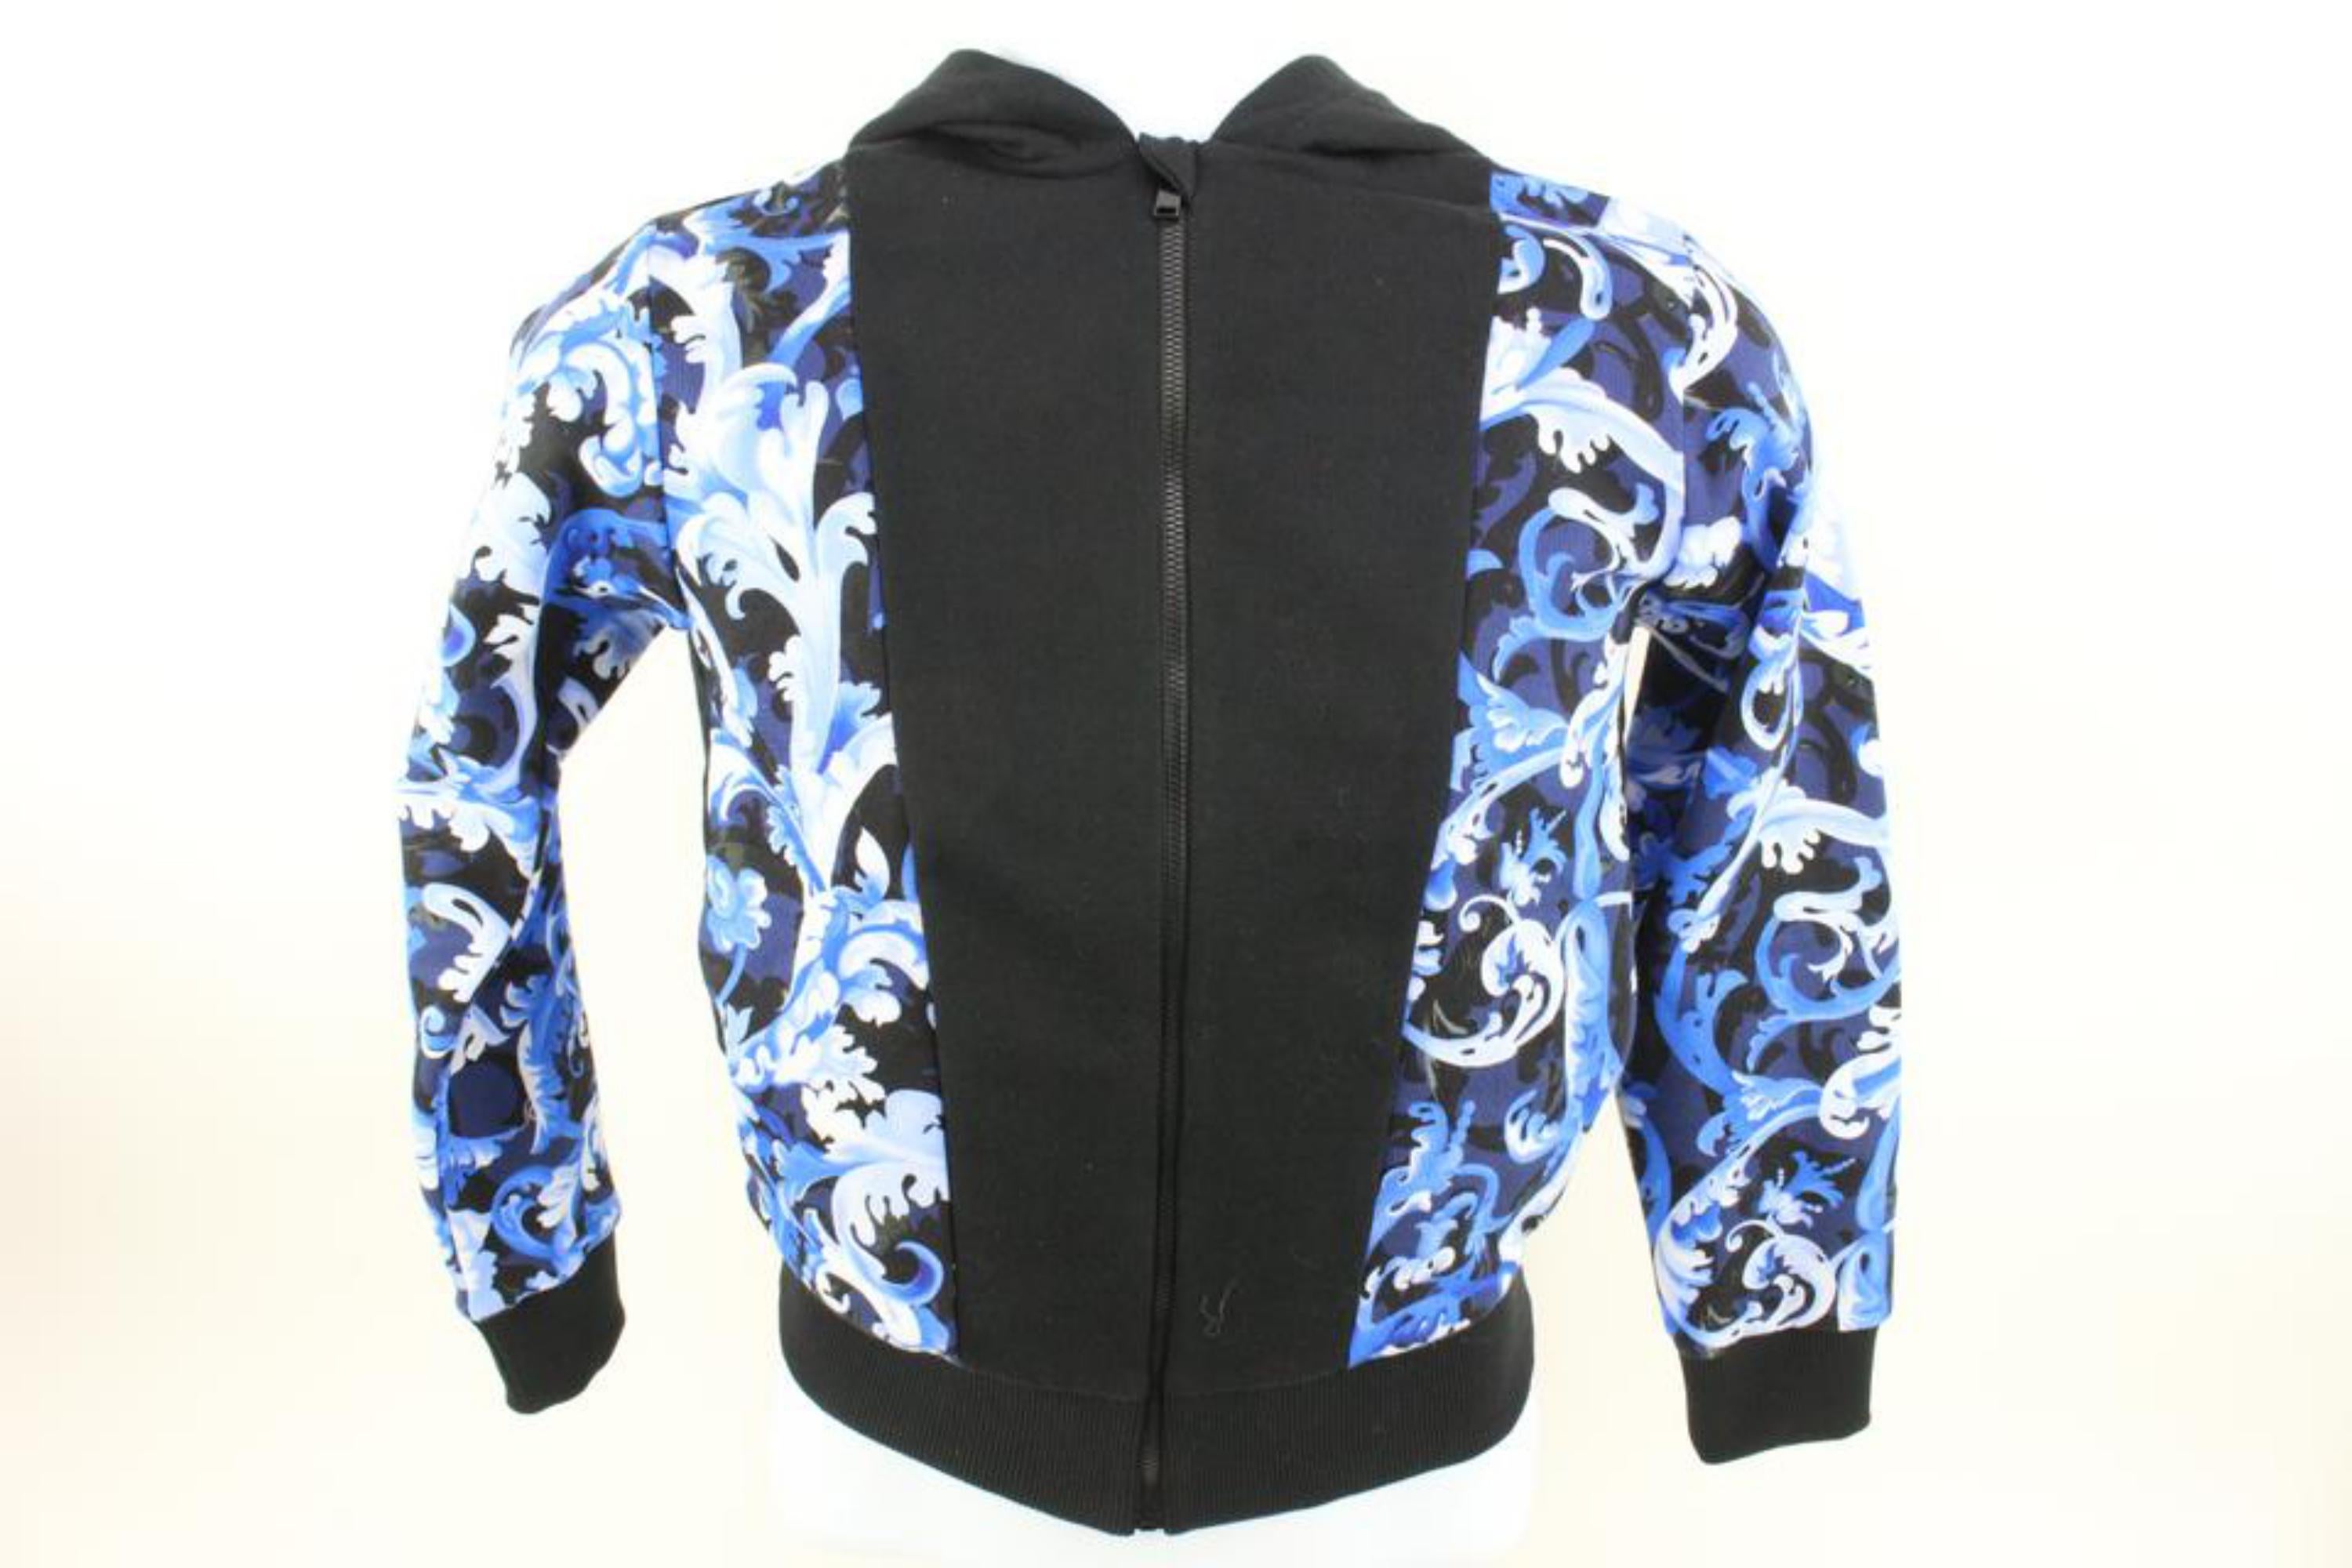 Versace Größe 10A Boy's schwarz blau Barock Zip Up Hoodie Sweatshirt Kind 121v39
Datum Code/Seriennummer: 044DB412F66B81
Hergestellt in: Italien
Maße: Länge:  16.5